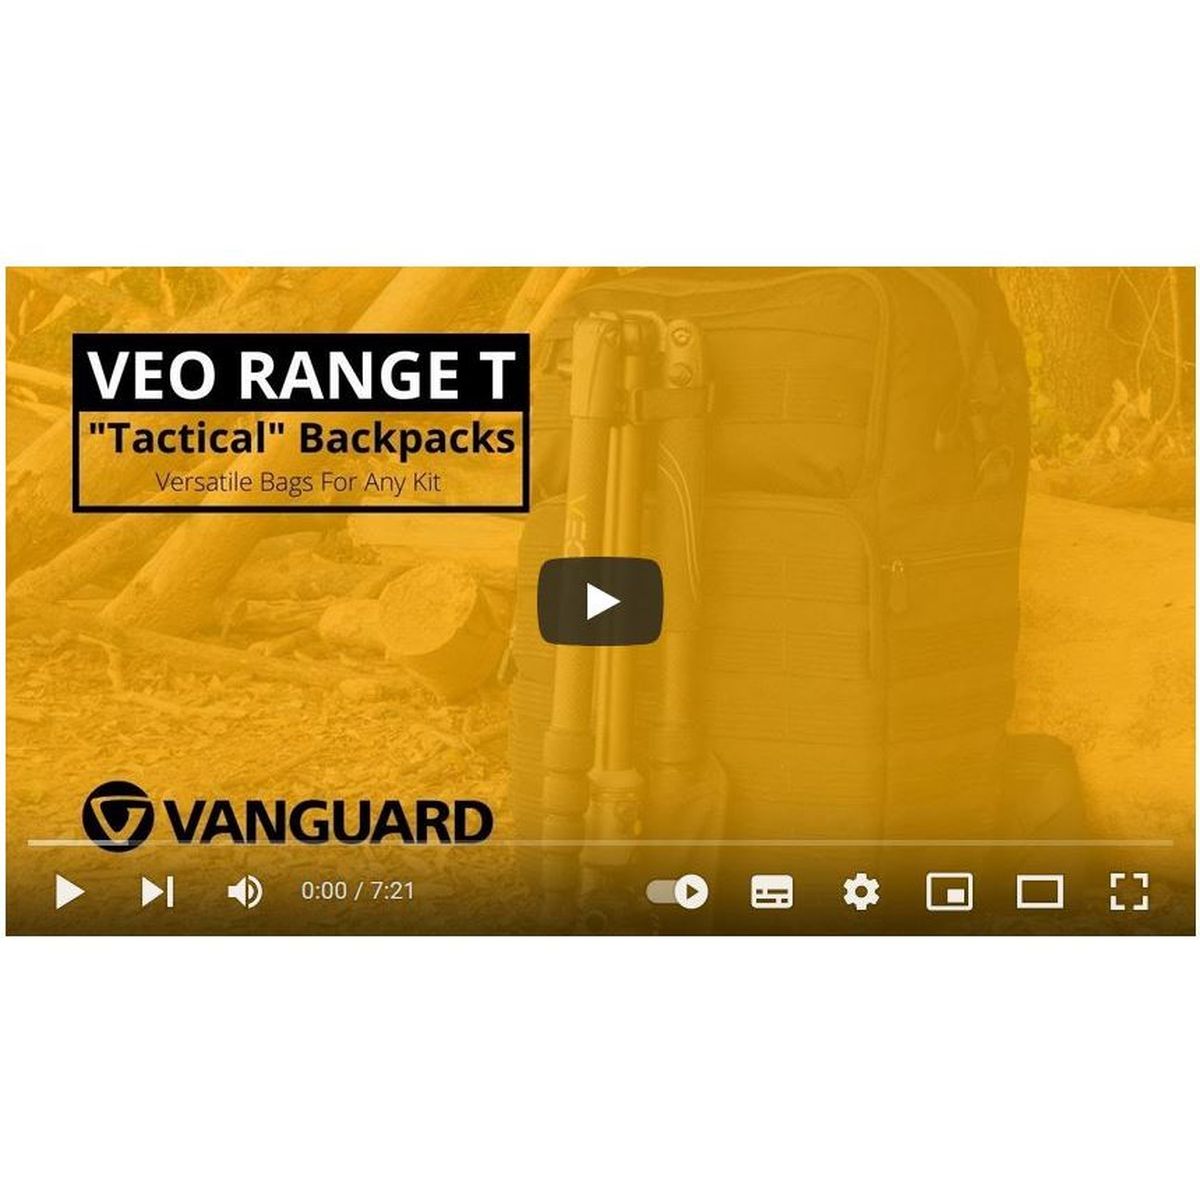 Vanguard VEO Range T 37M BG